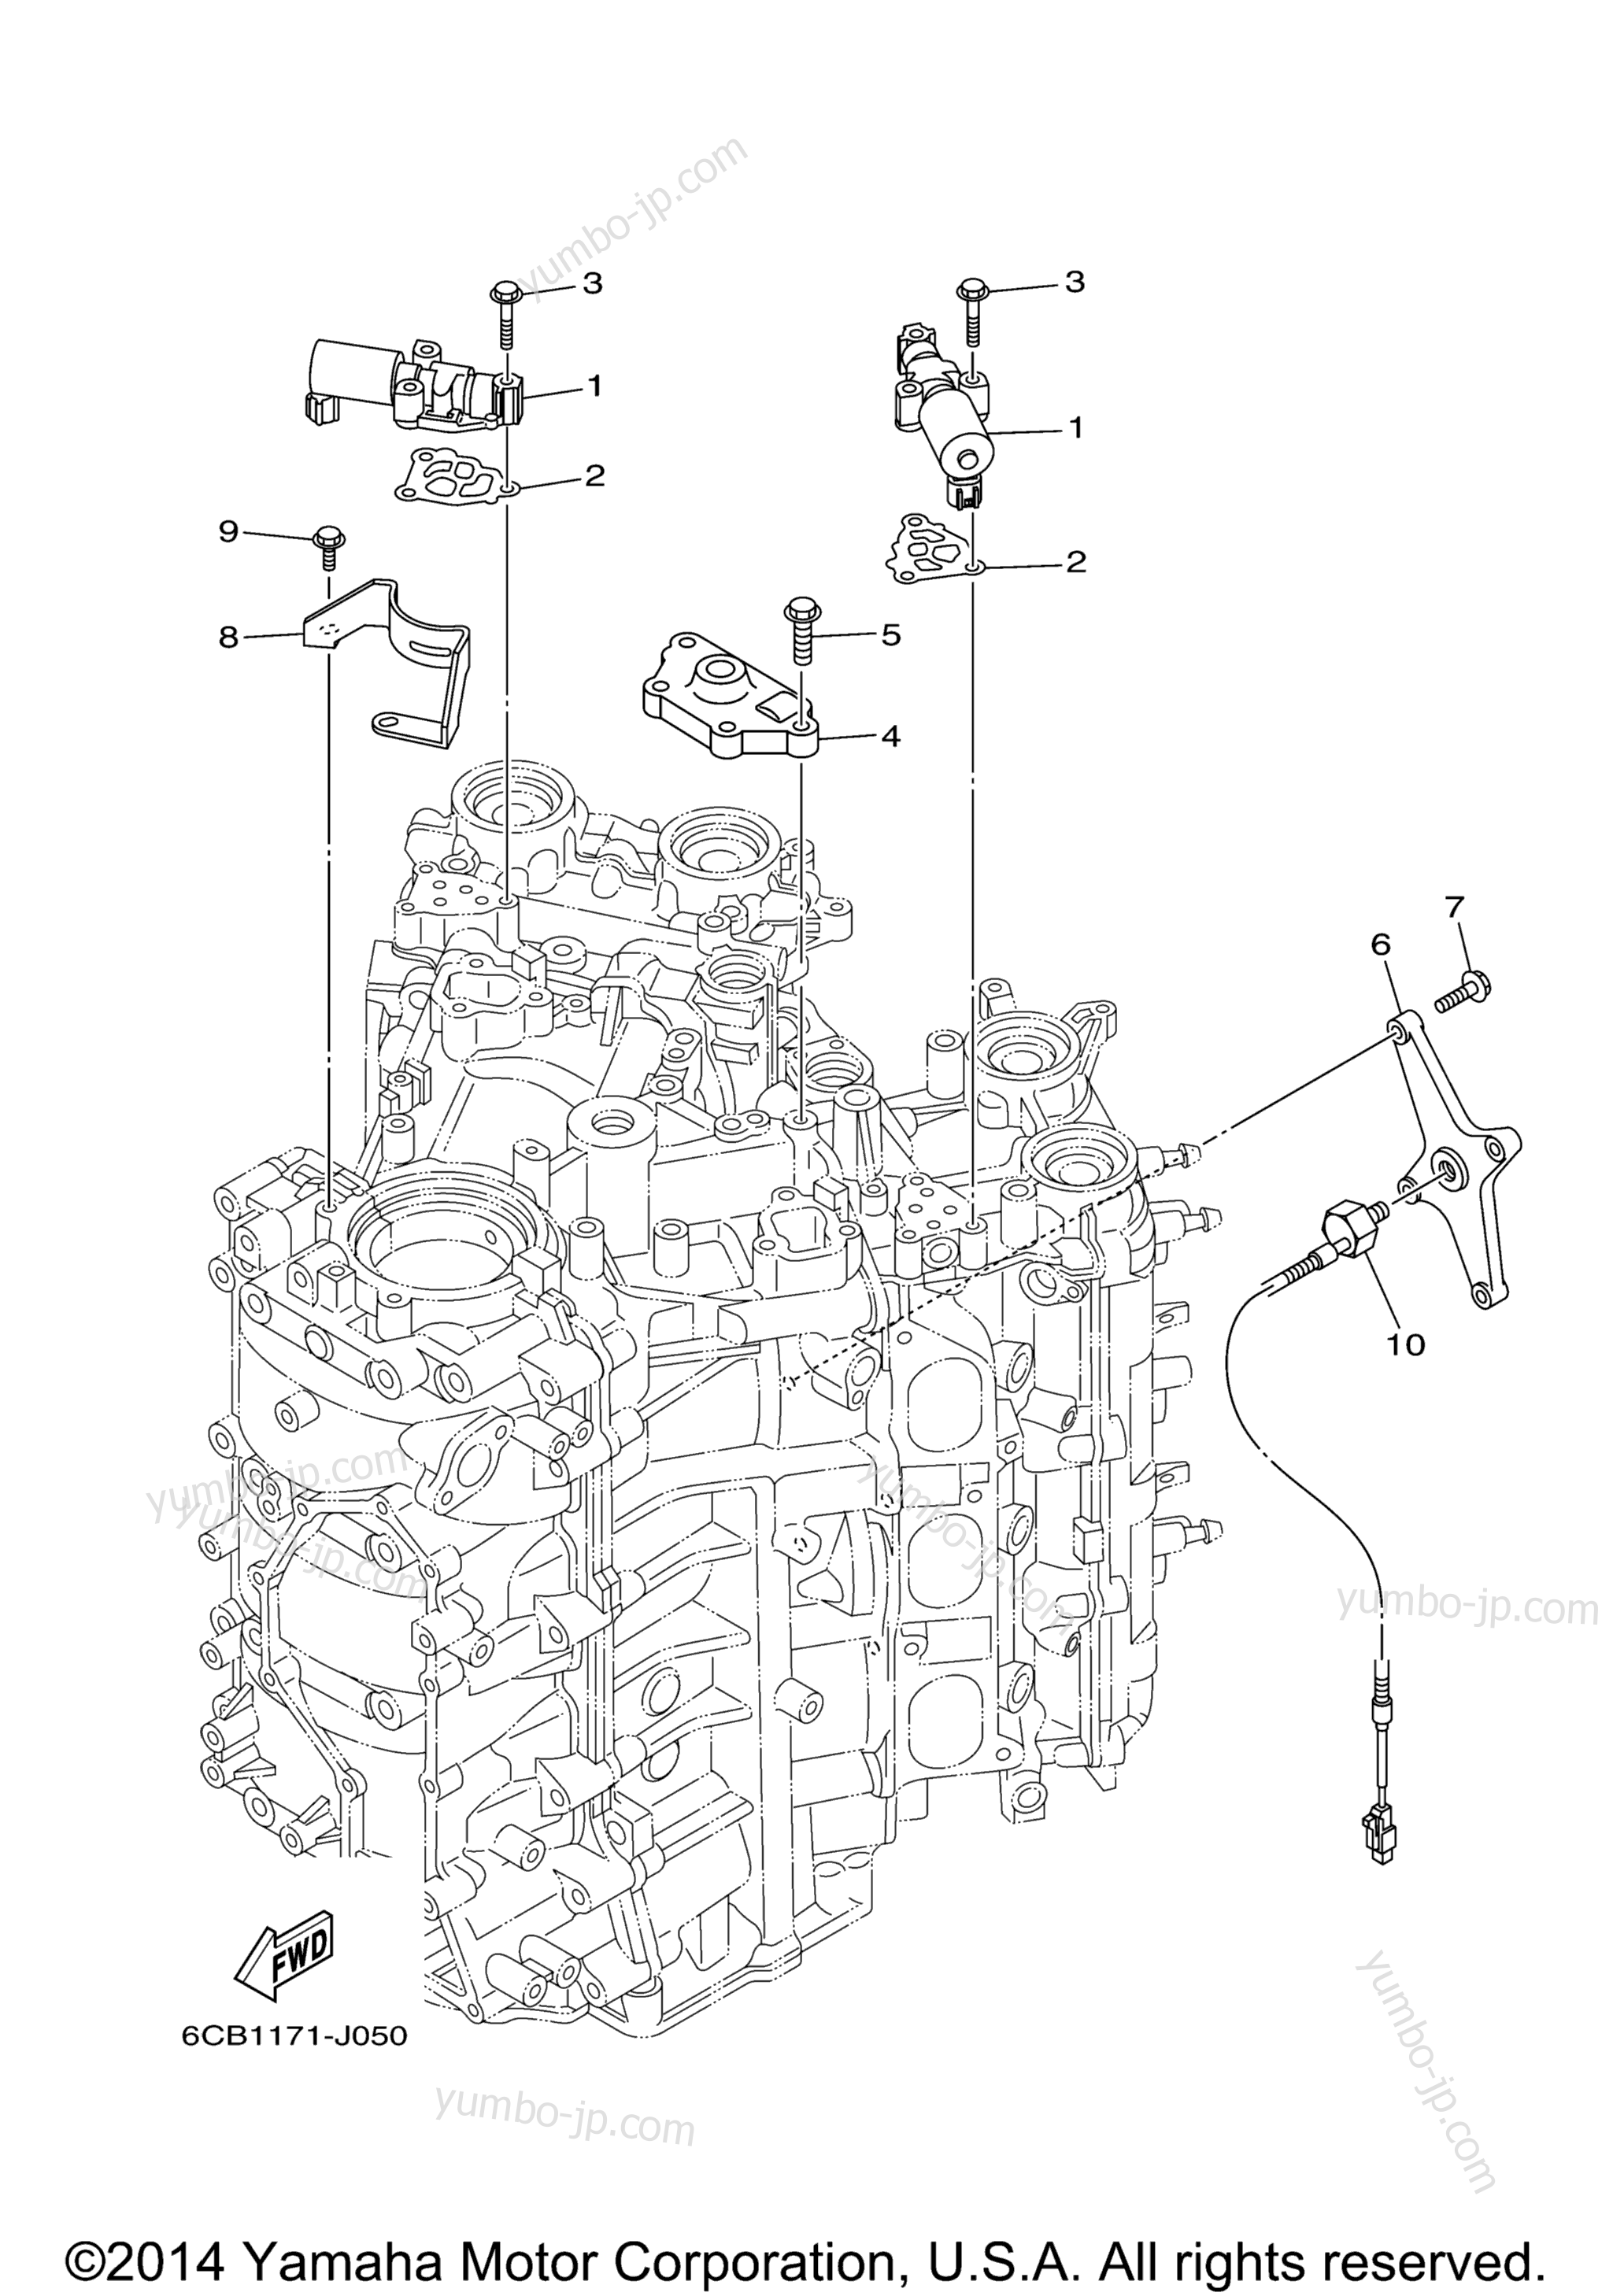 Cylinder Crankcase 3 для лодочных моторов YAMAHA VF225LA_01 (0112) 2006 г.